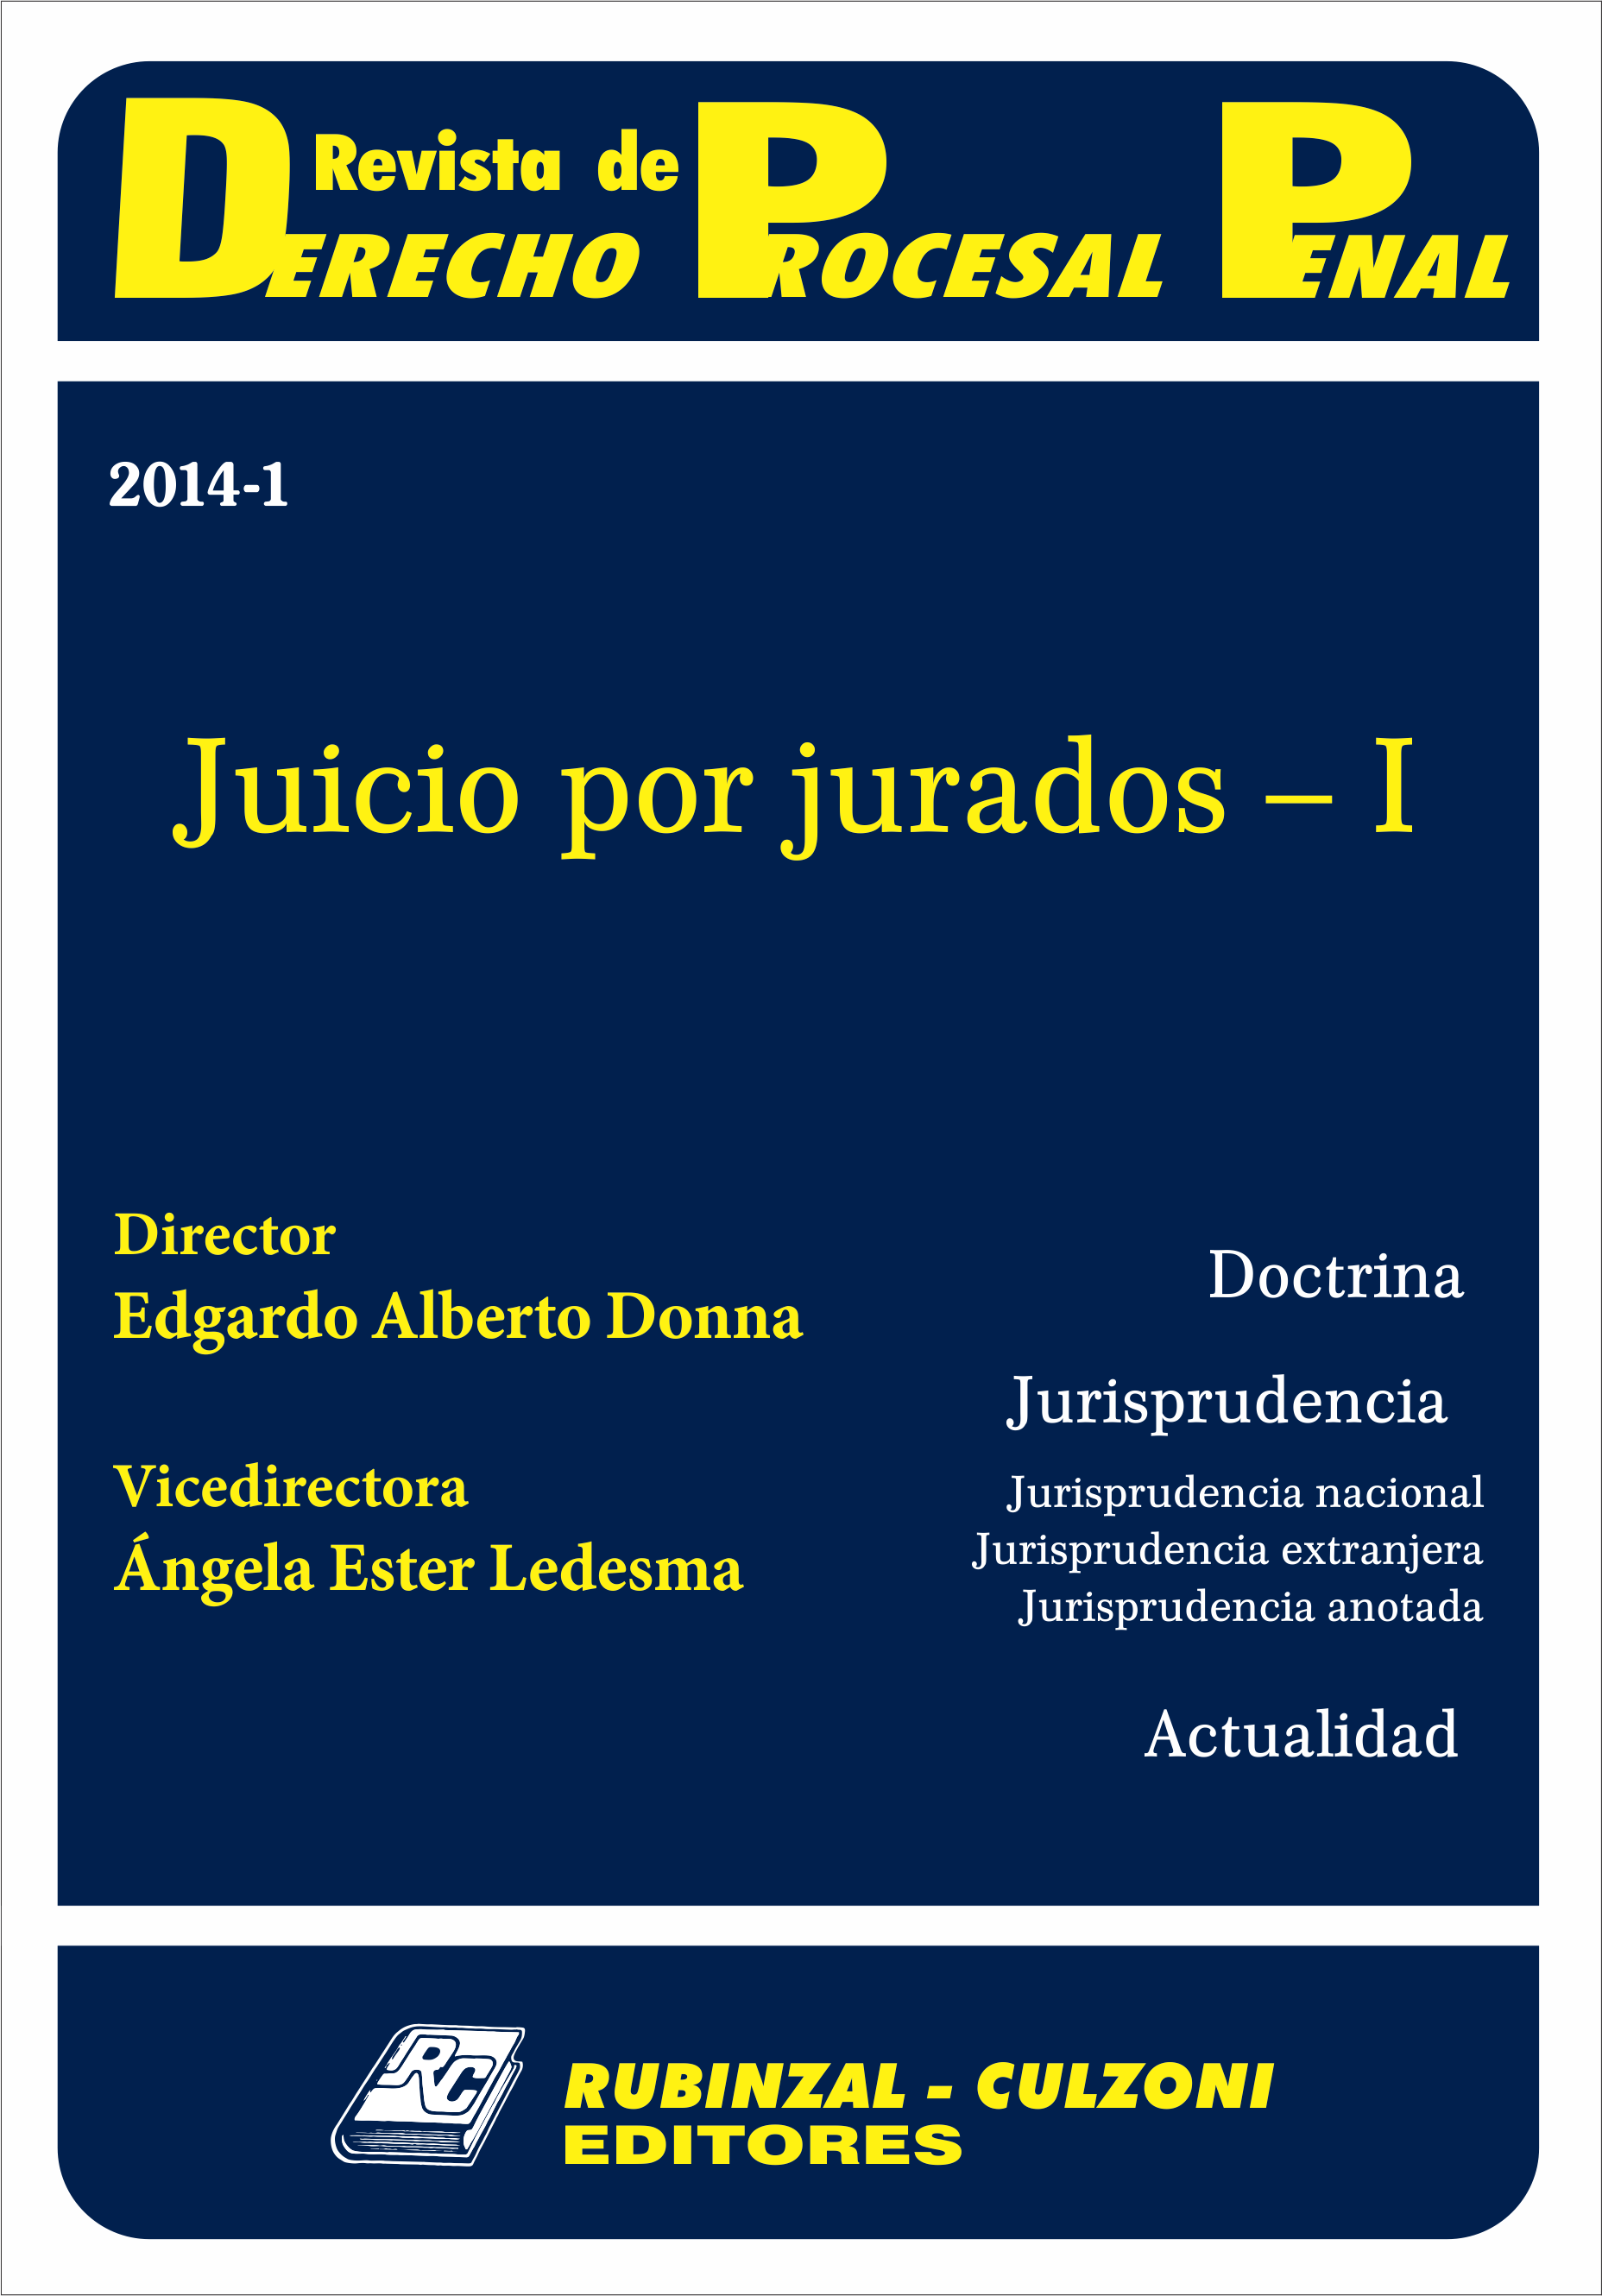 Revista de Derecho Procesal Penal - Juicio por jurados - I.